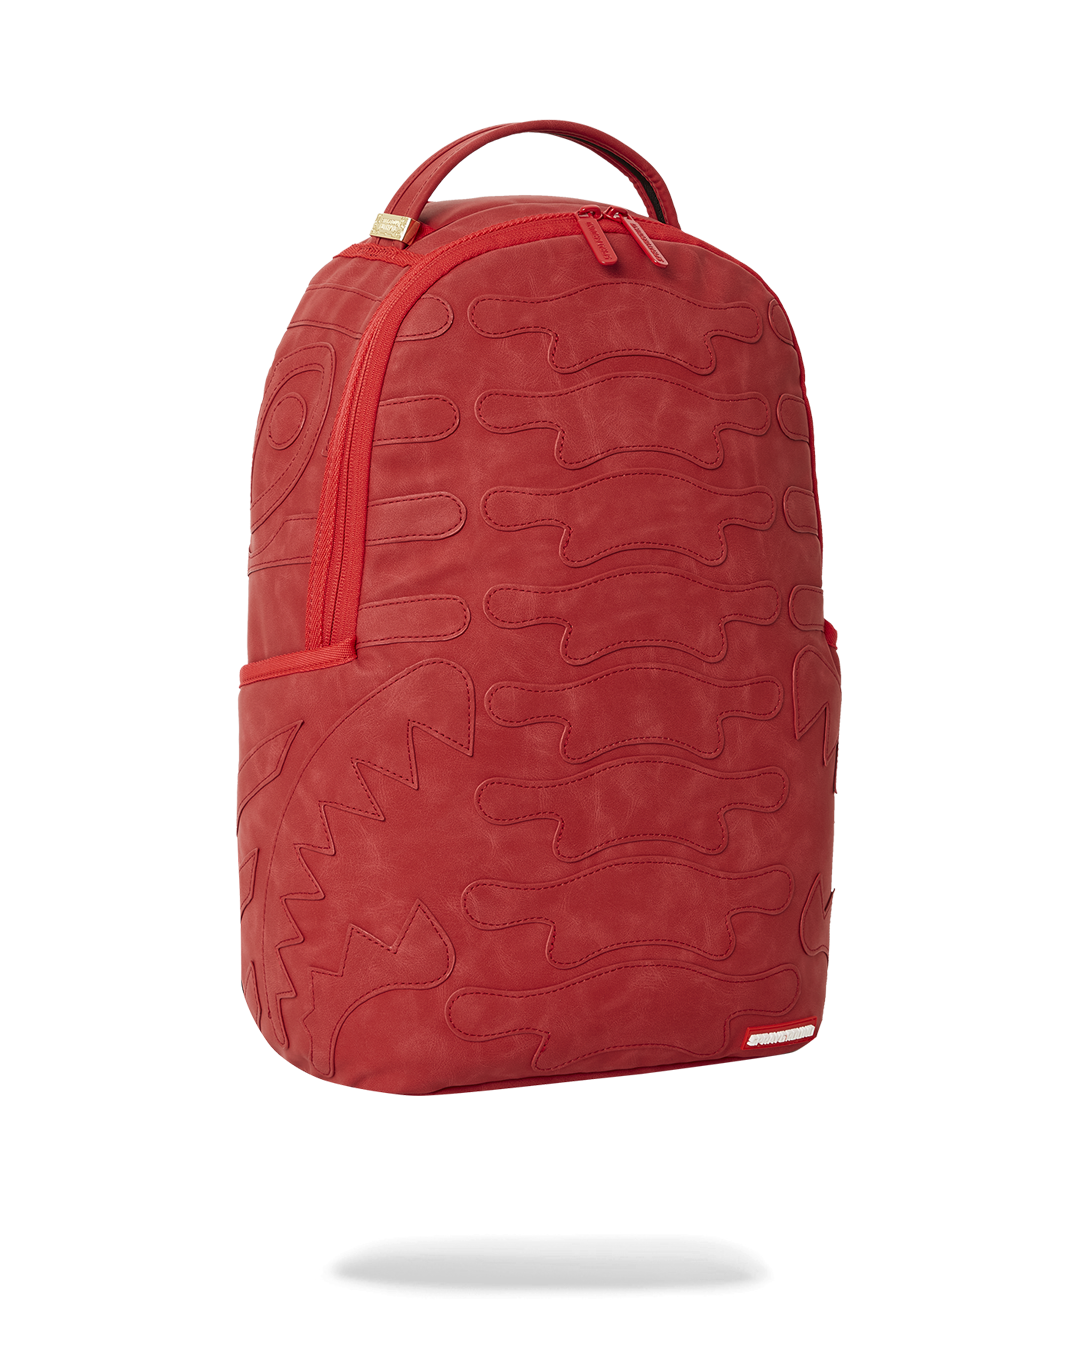 vuitton sprayground backpack